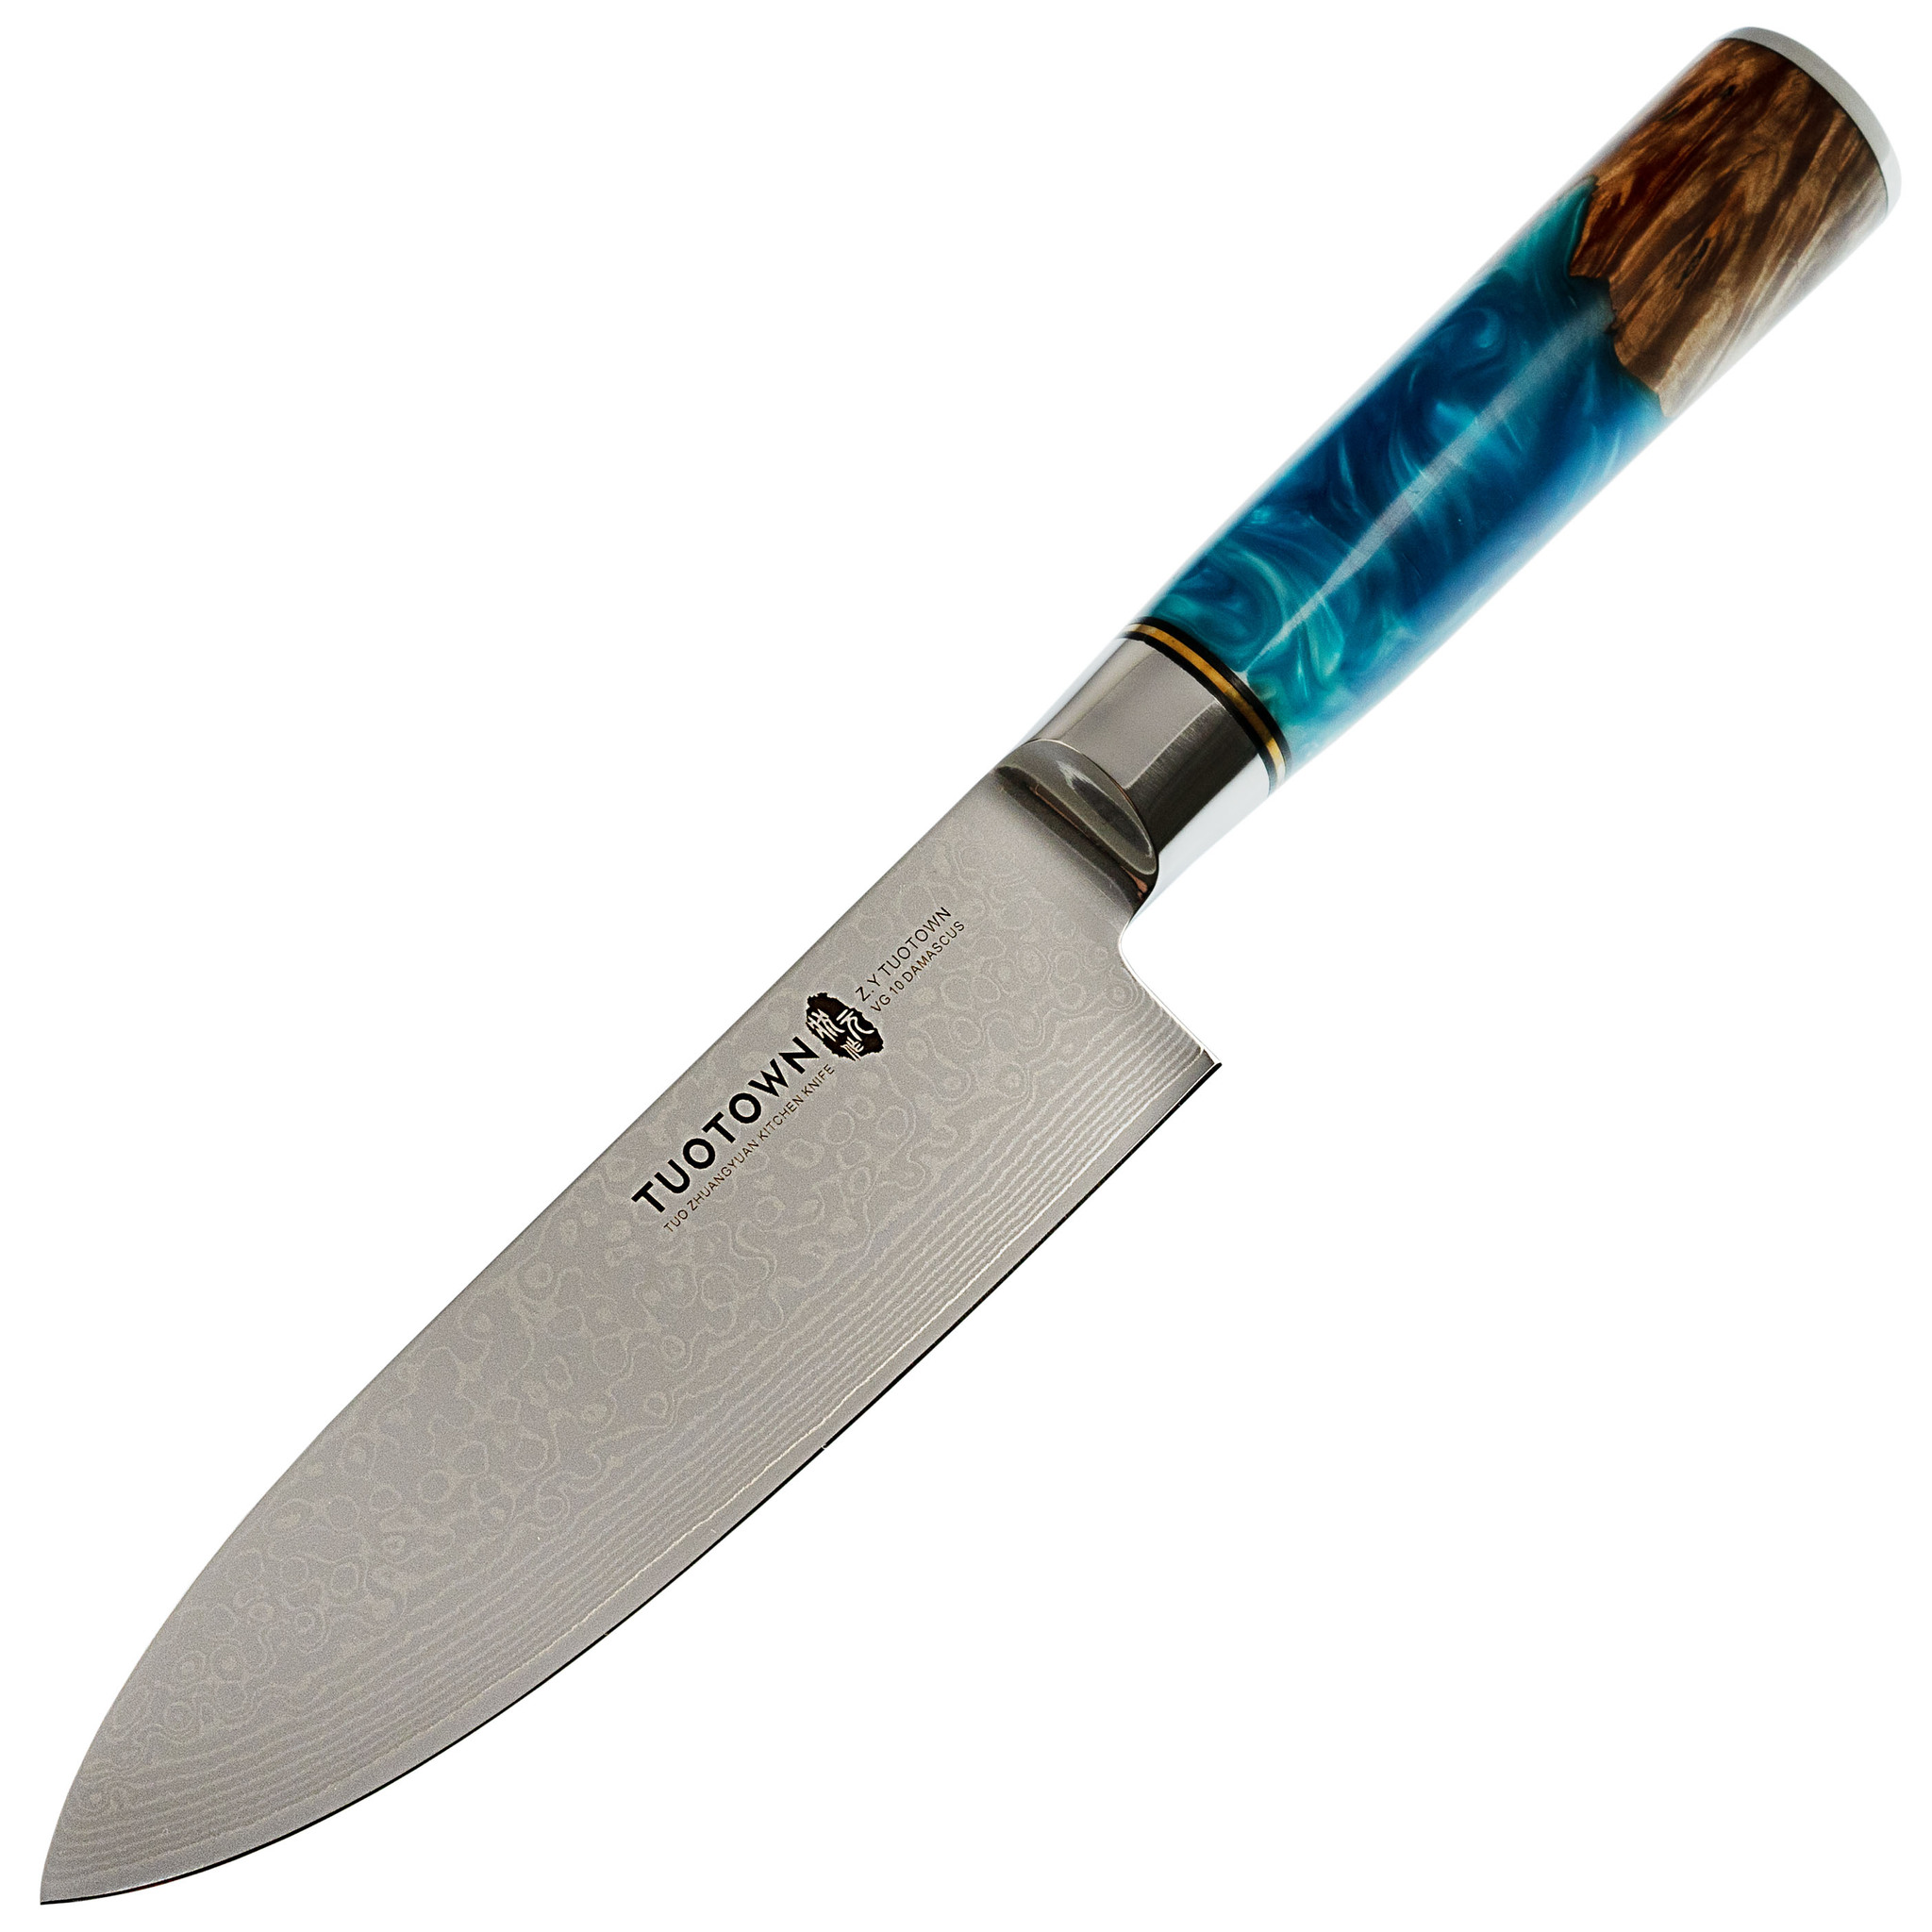 Нож кухонный Tuotown DM003, сталь VG-10 Damascus, рукоять дерево/эпоксидка, Кухонные ножи, Ножи шефа